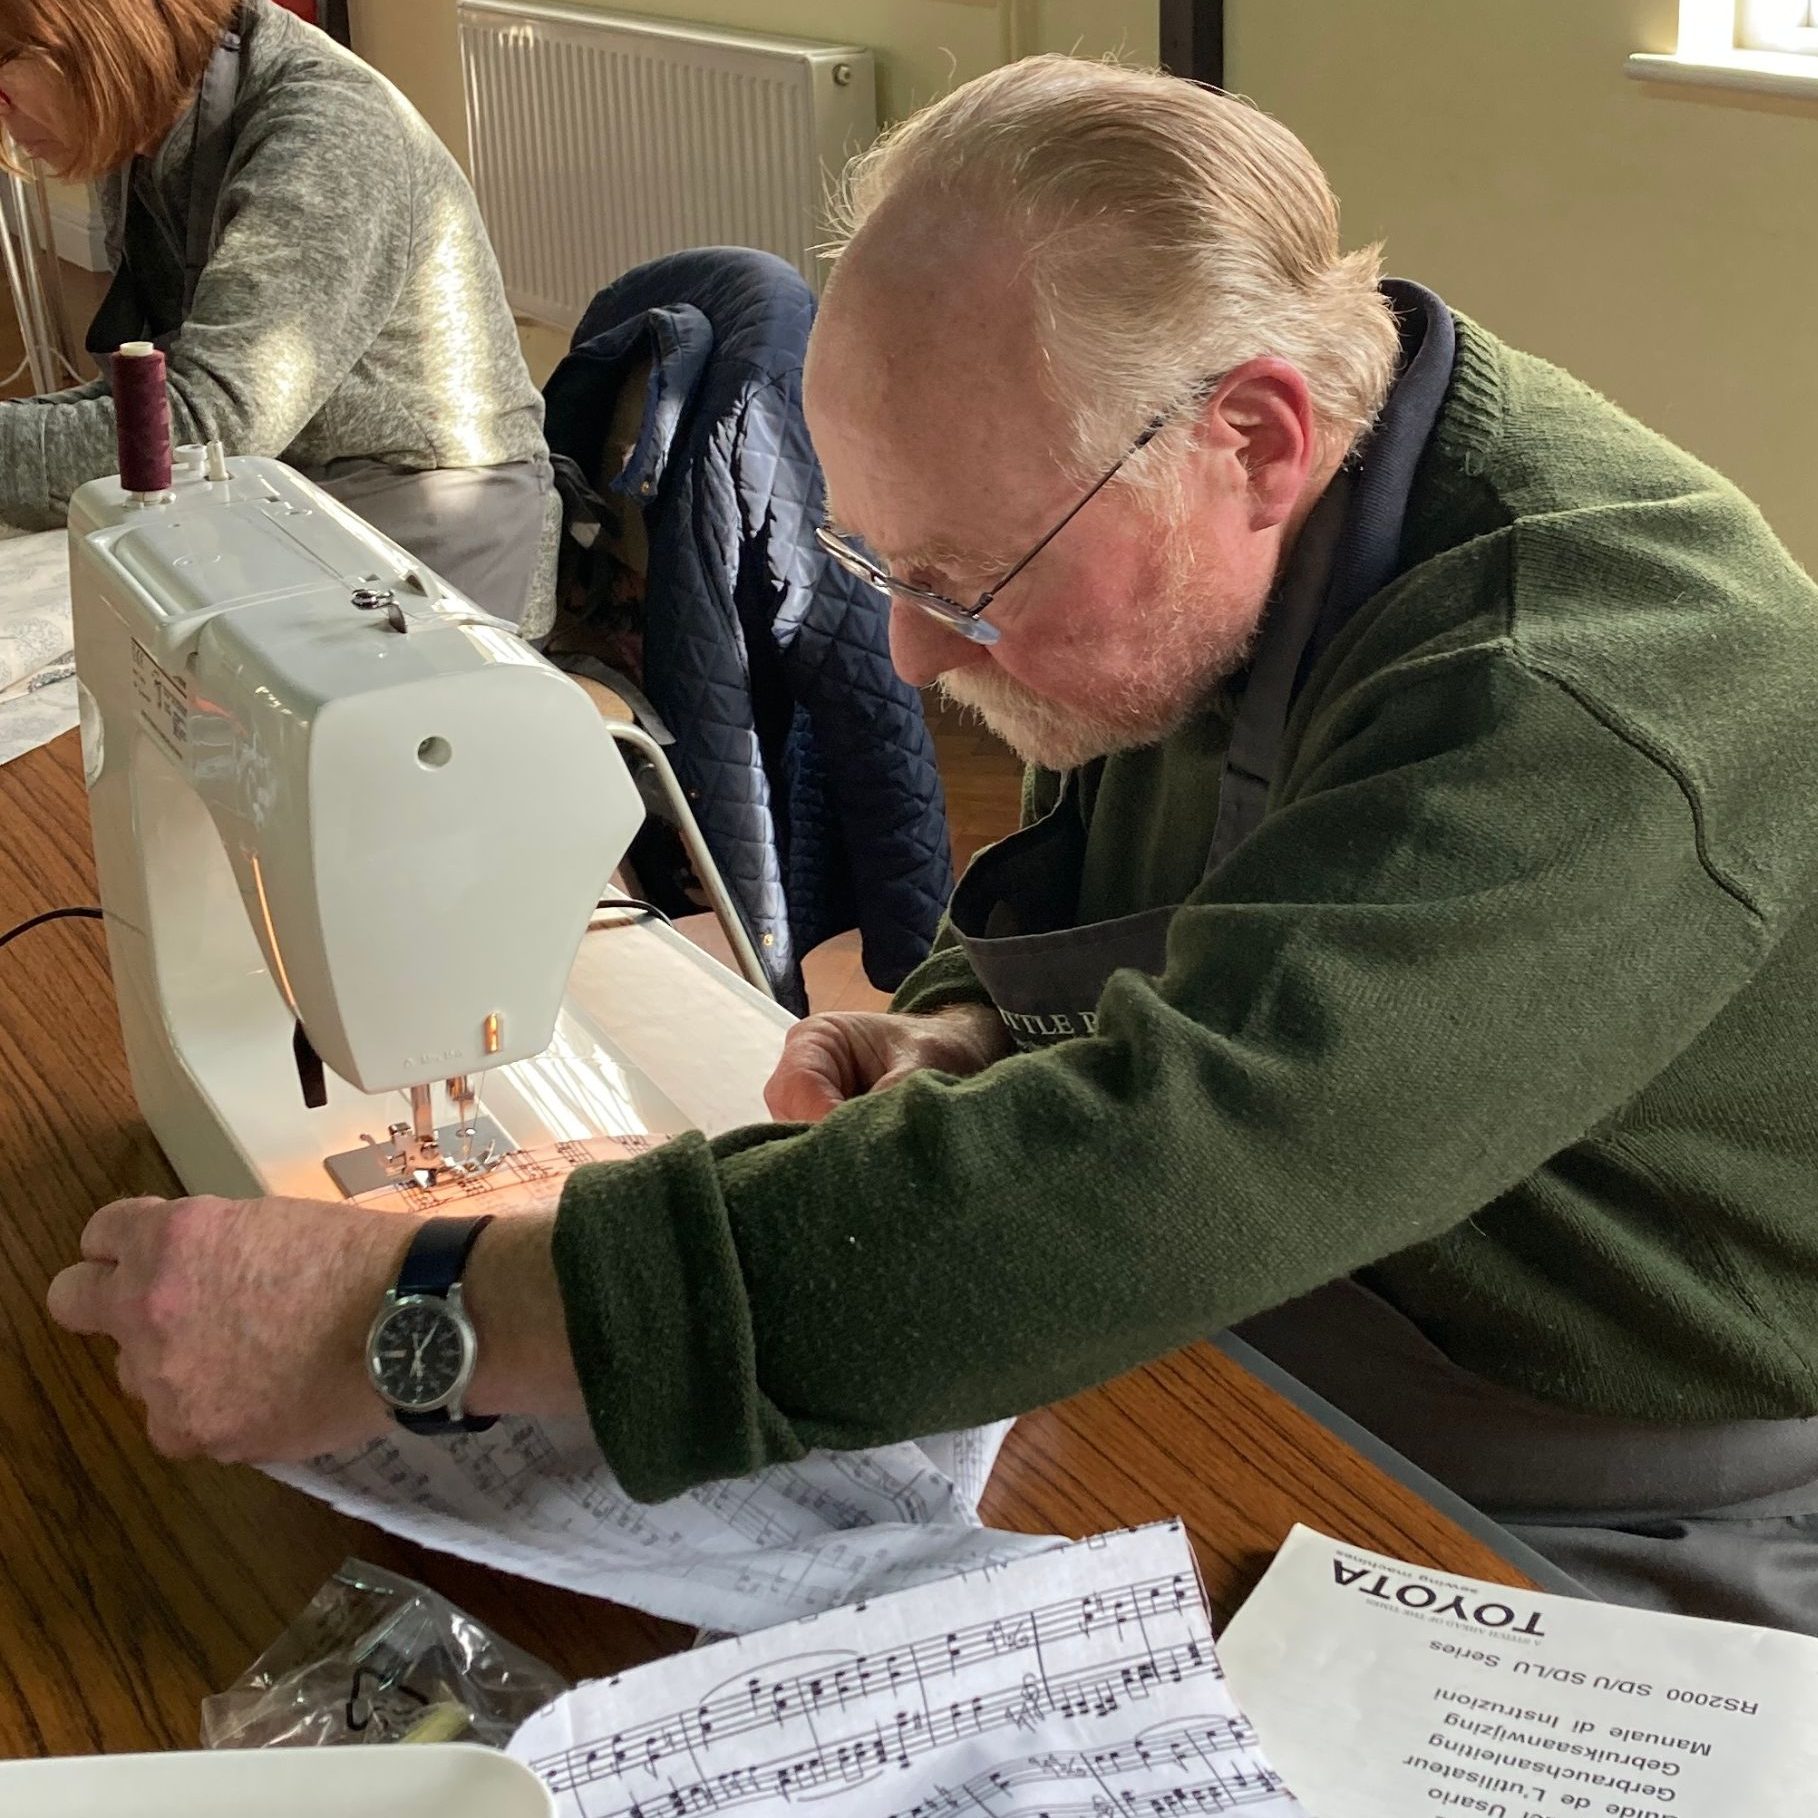 Beginners Sewing Workshop - New Skills